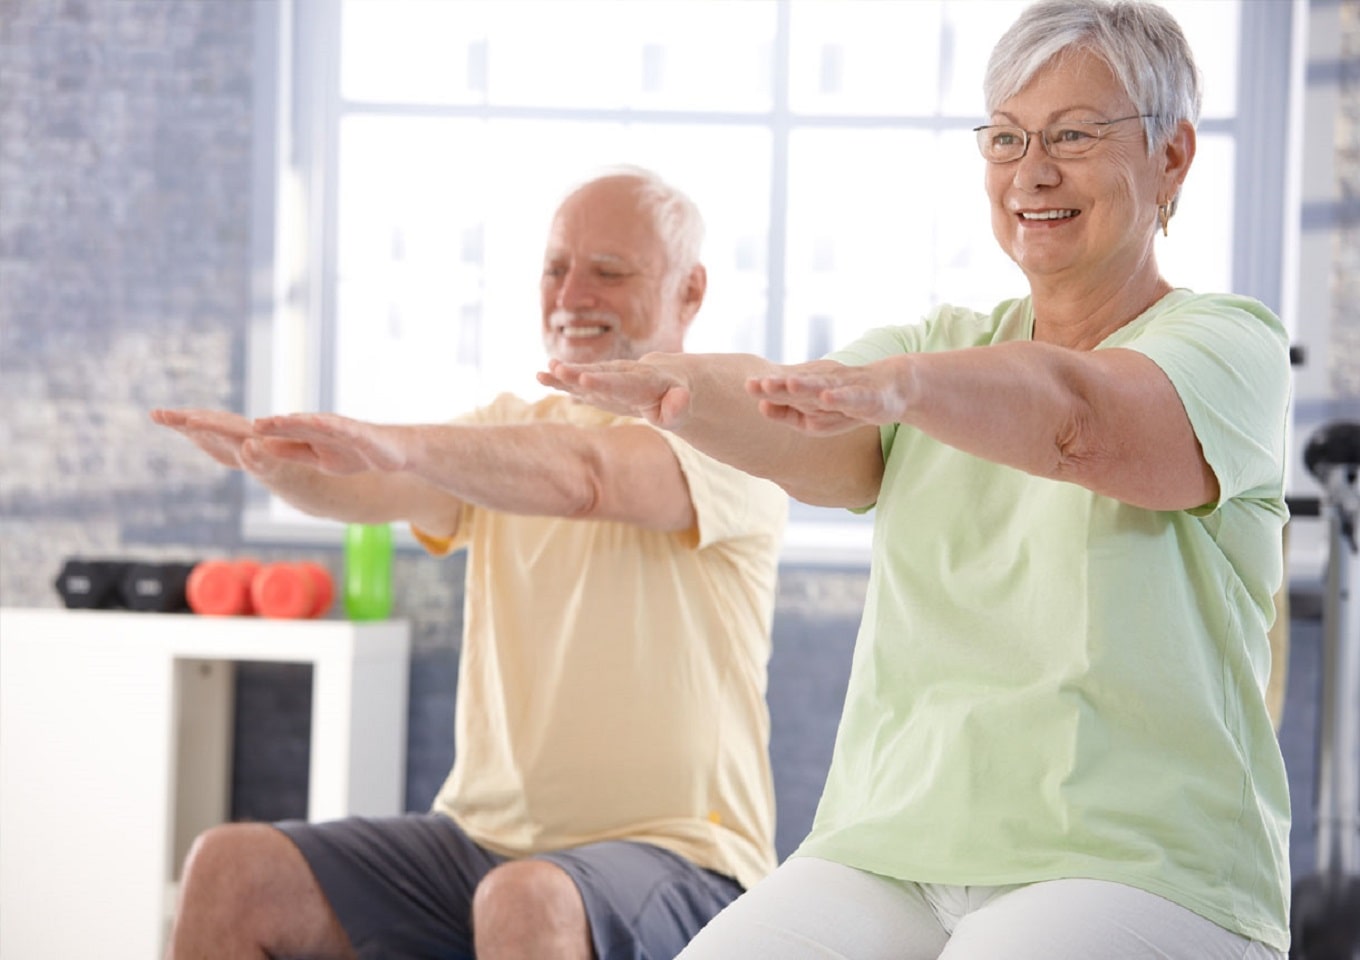 Физические упражнения и тренировки являются неотъемлемой частью реабилитации после инфаркта